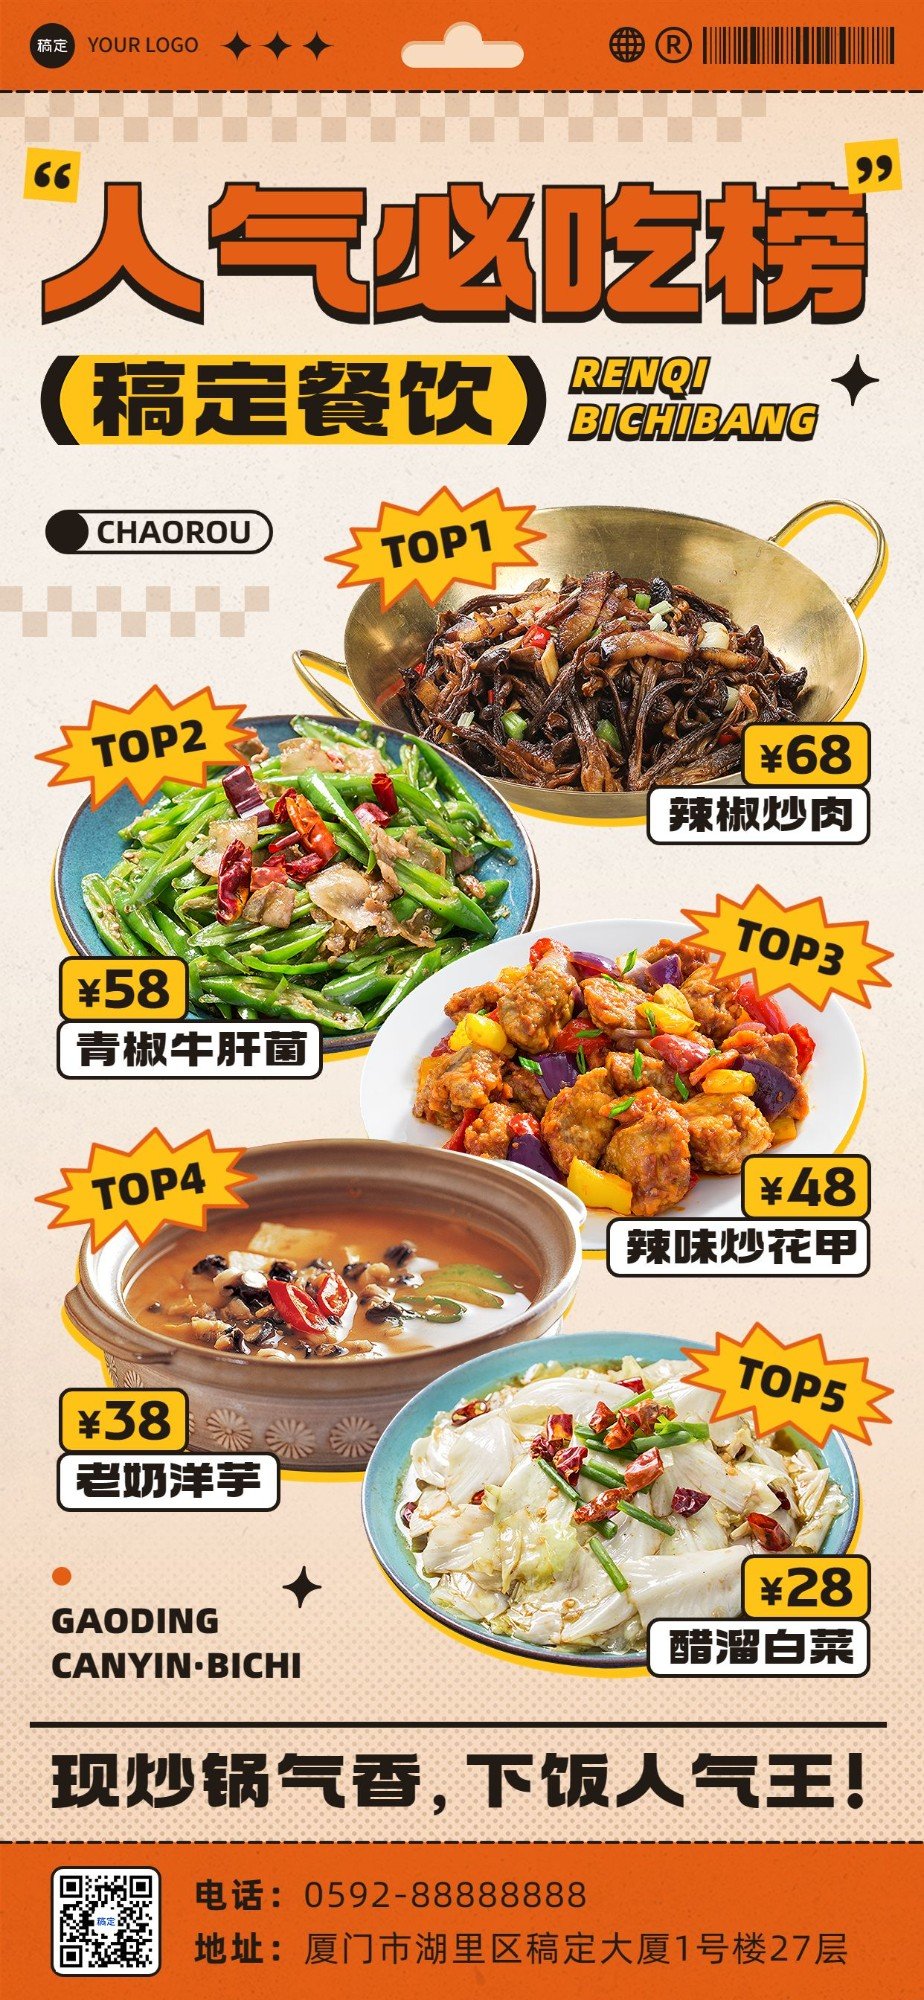 餐饮美食品牌宣传中式快餐热门产品菜单全屏竖版海报预览效果